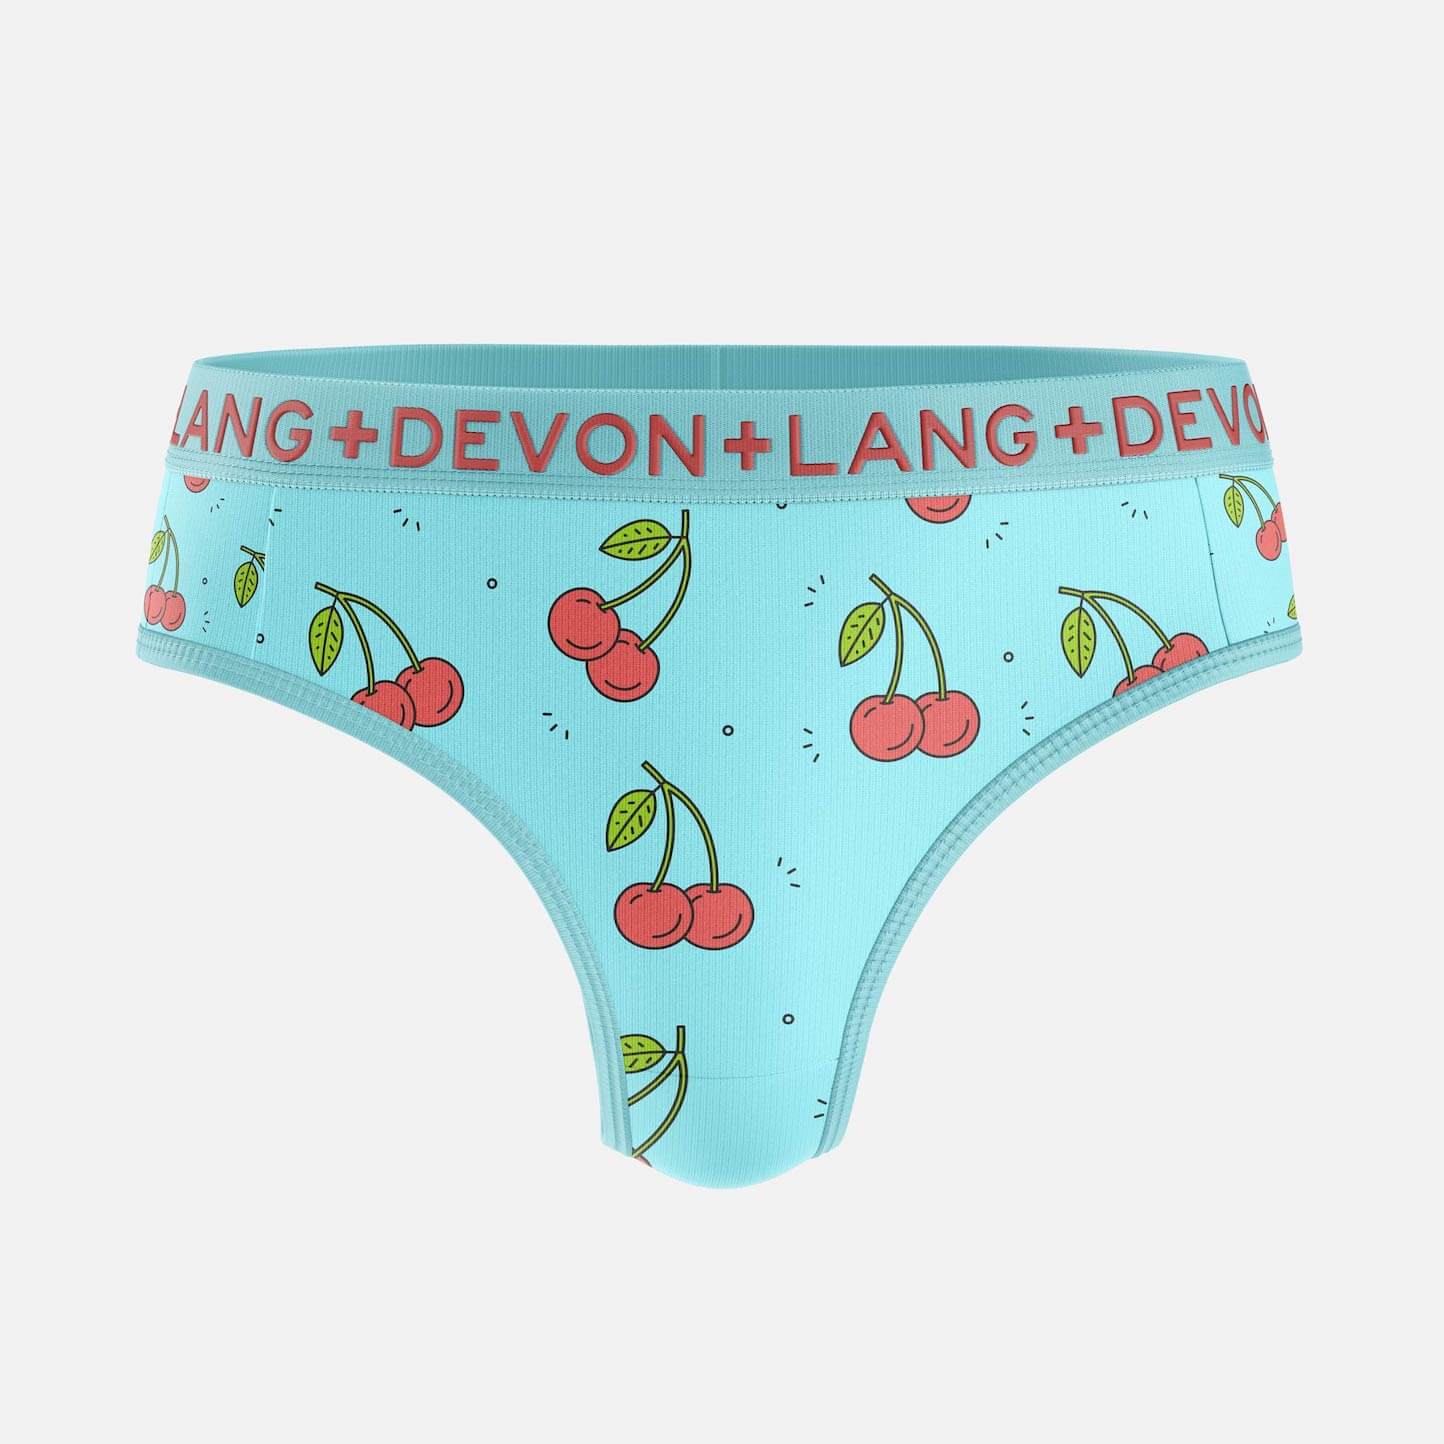 Bria Collection - Womens Underwear - Devon + Lang